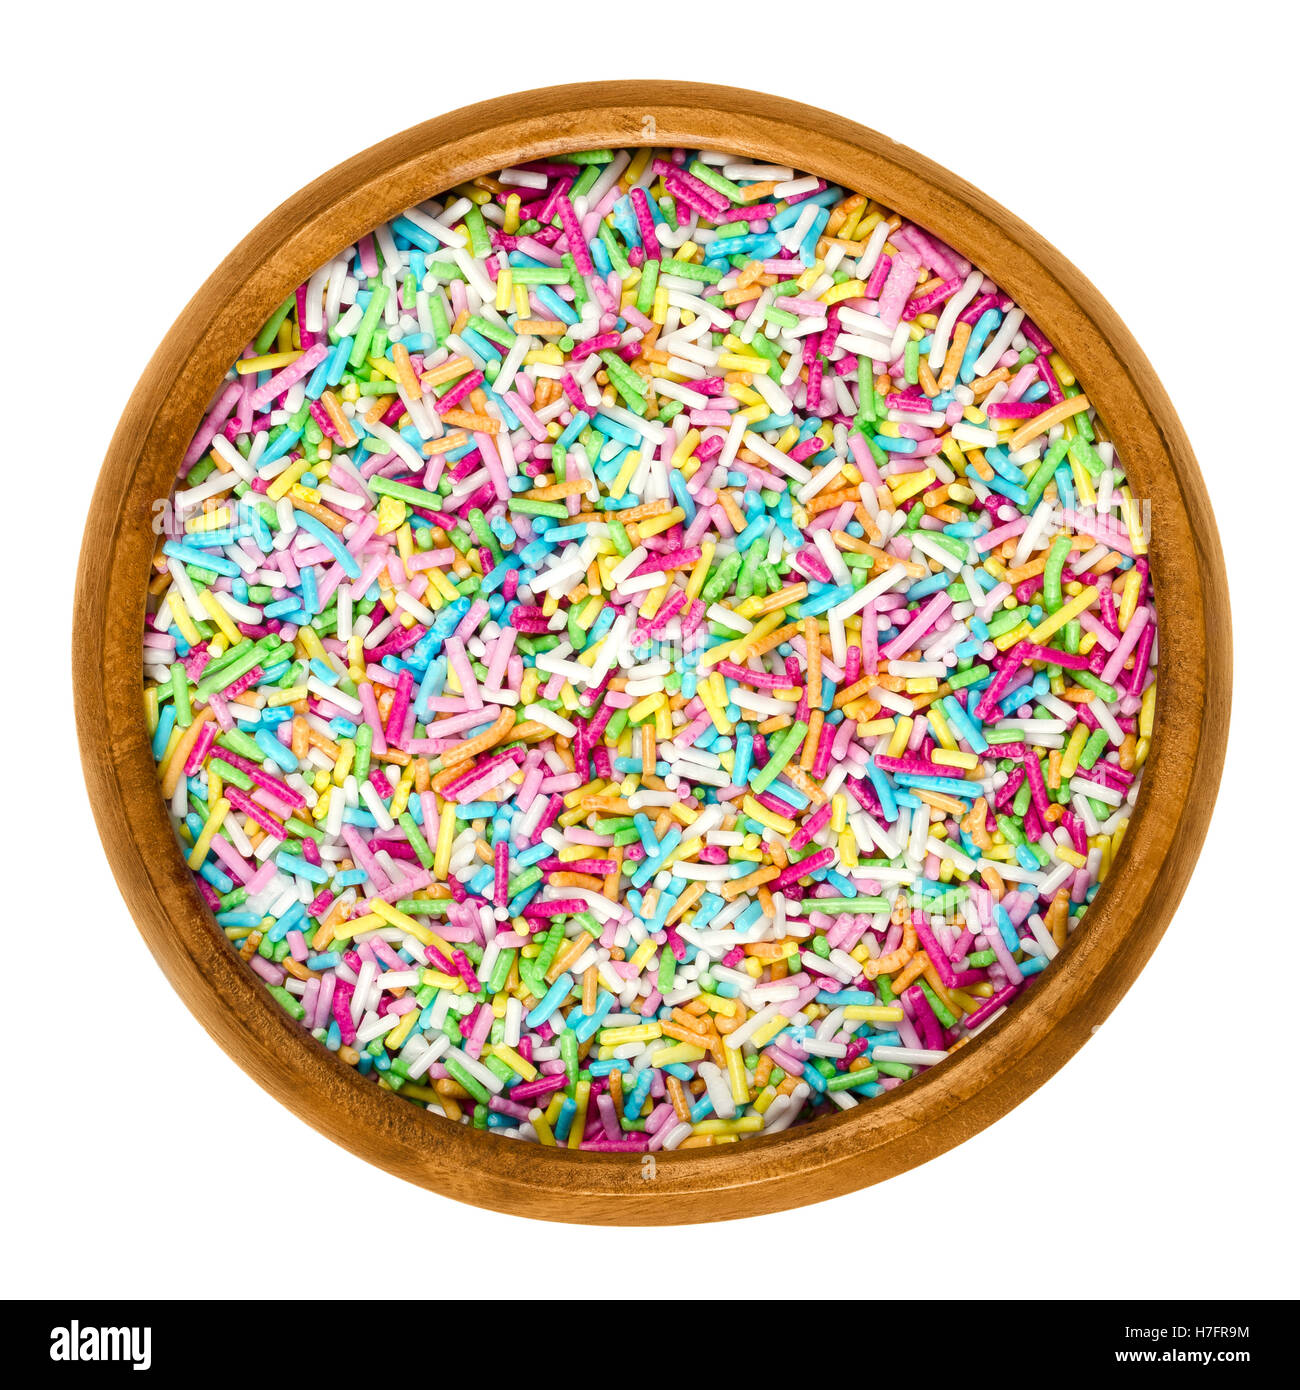 Bunte Zucker Streusel für Lebensmittel Dekorationen in Holzschale auf weißem Hintergrund. Multi farbige Bäckerei Dekoration Zutat. Stockfoto